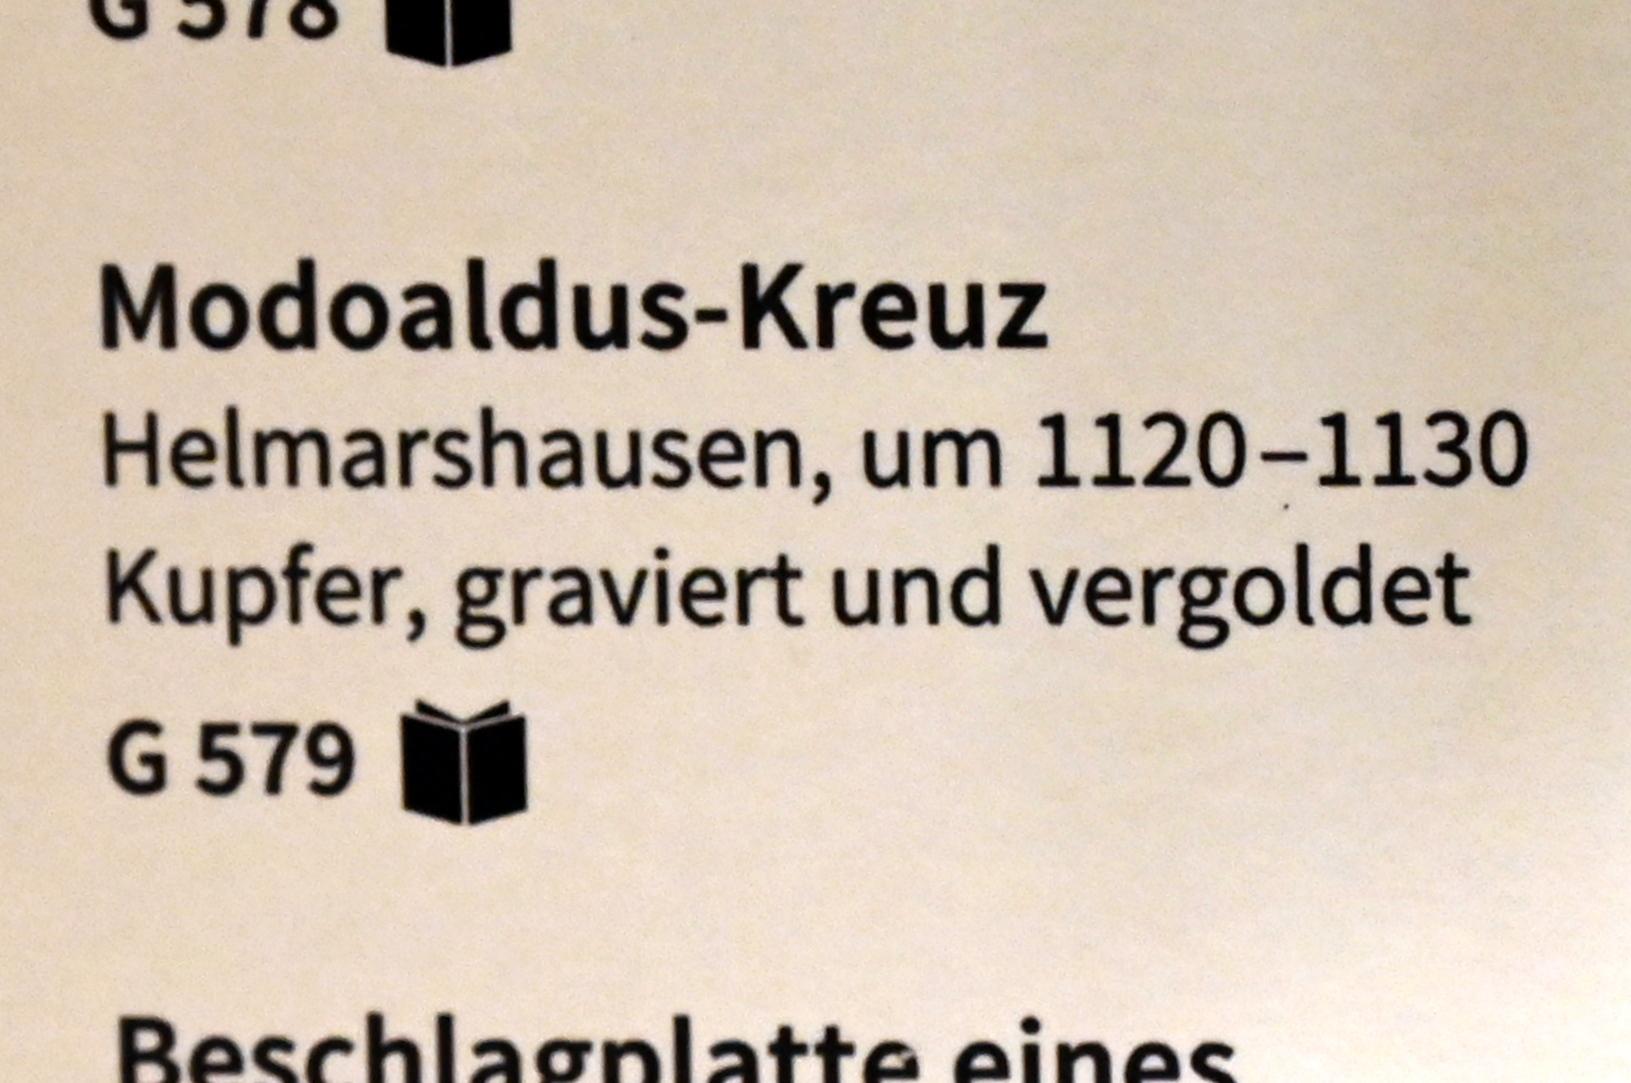 Modoaldus-Kreuz, Köln, Museum Schnütgen, Saal 12, um 1120–1130, Bild 2/2